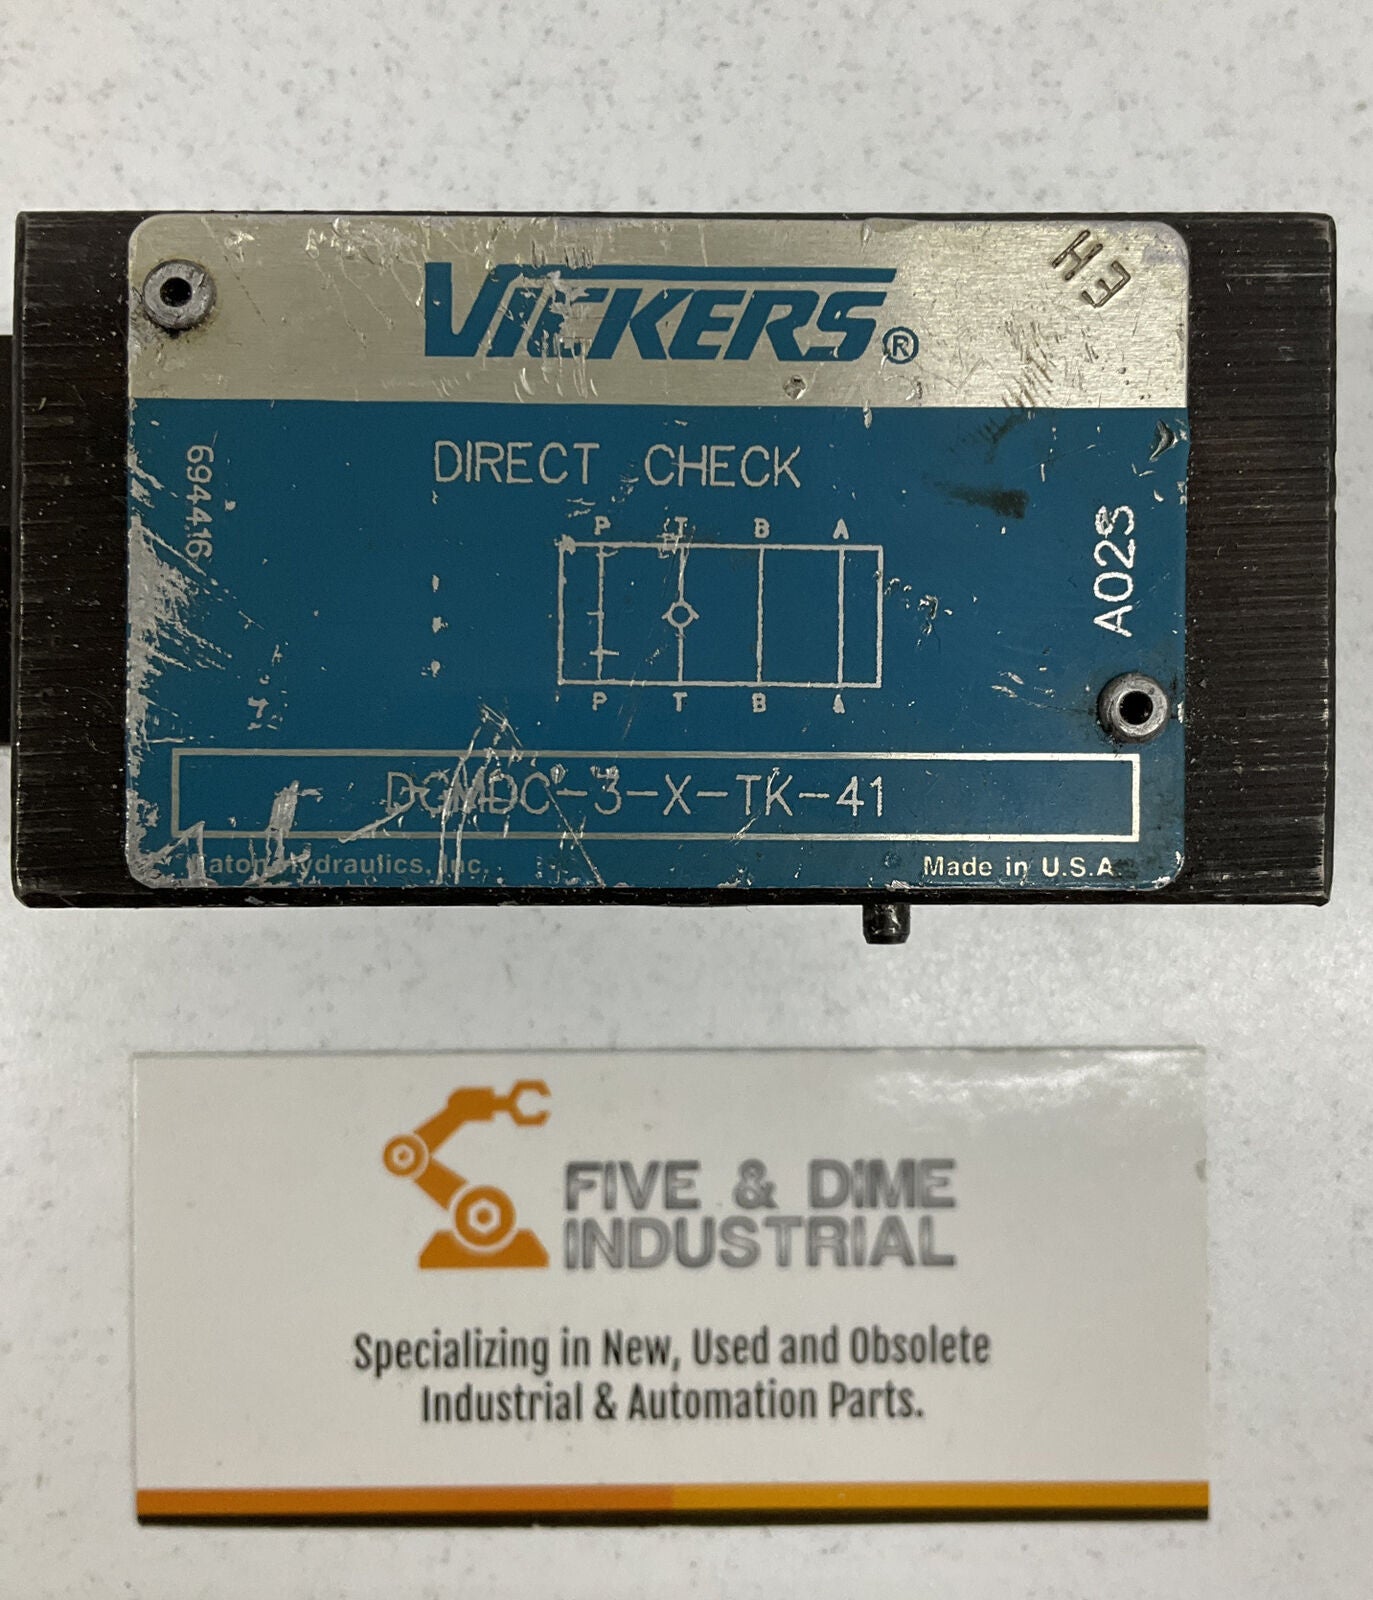 Eaton Vickers DGMDC-3-X-TK-41 Pilot Check Valve 694416 (BL187)